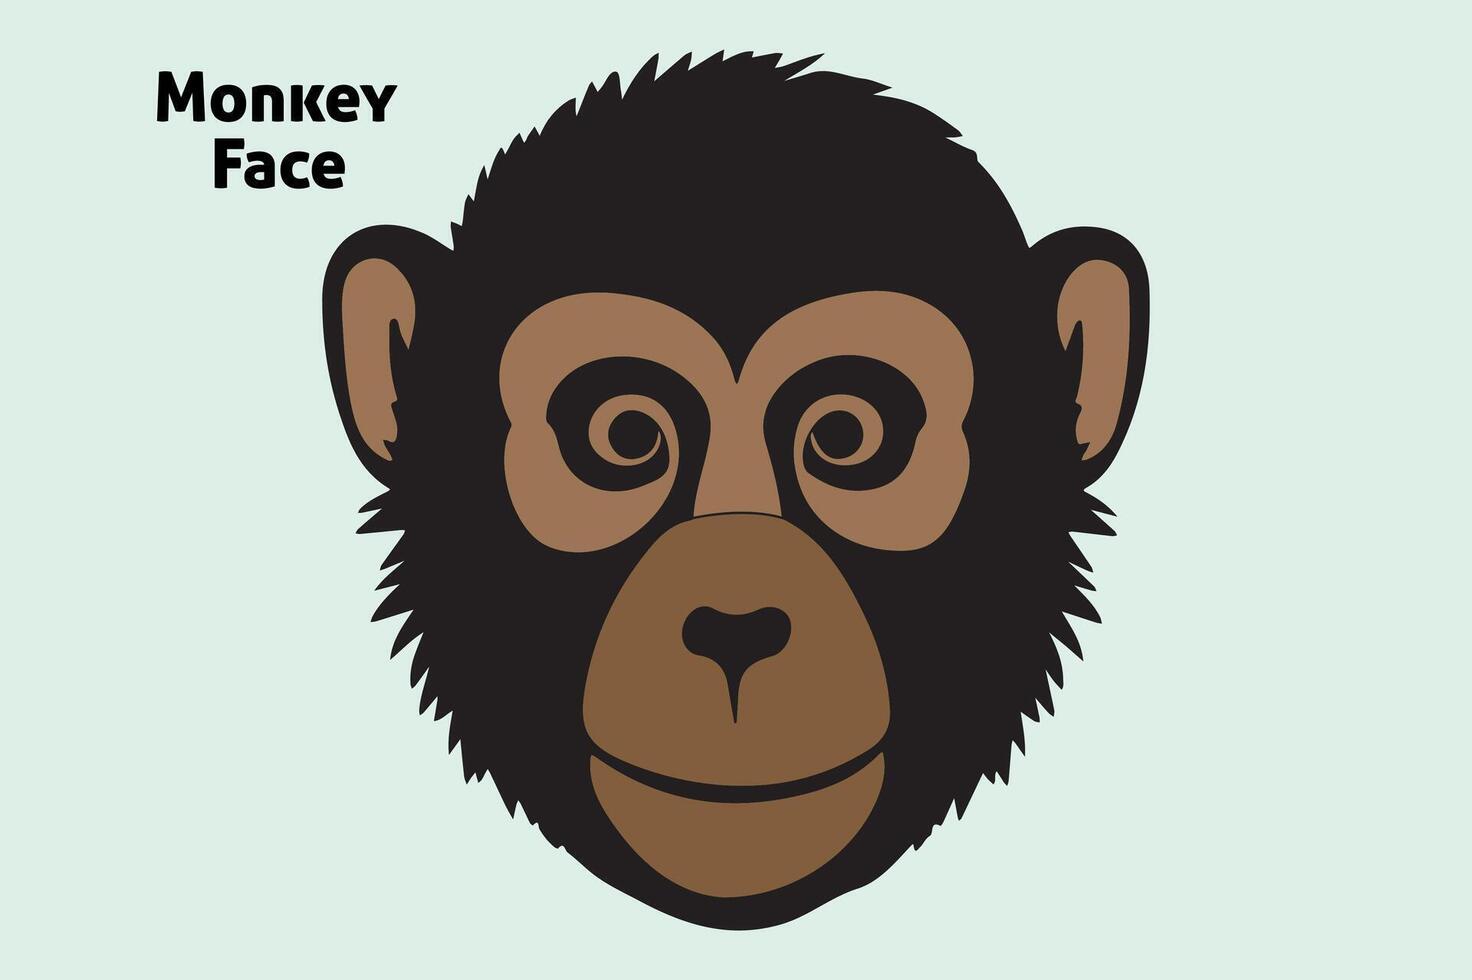 aap gezicht illustratie vrij downloaden vector